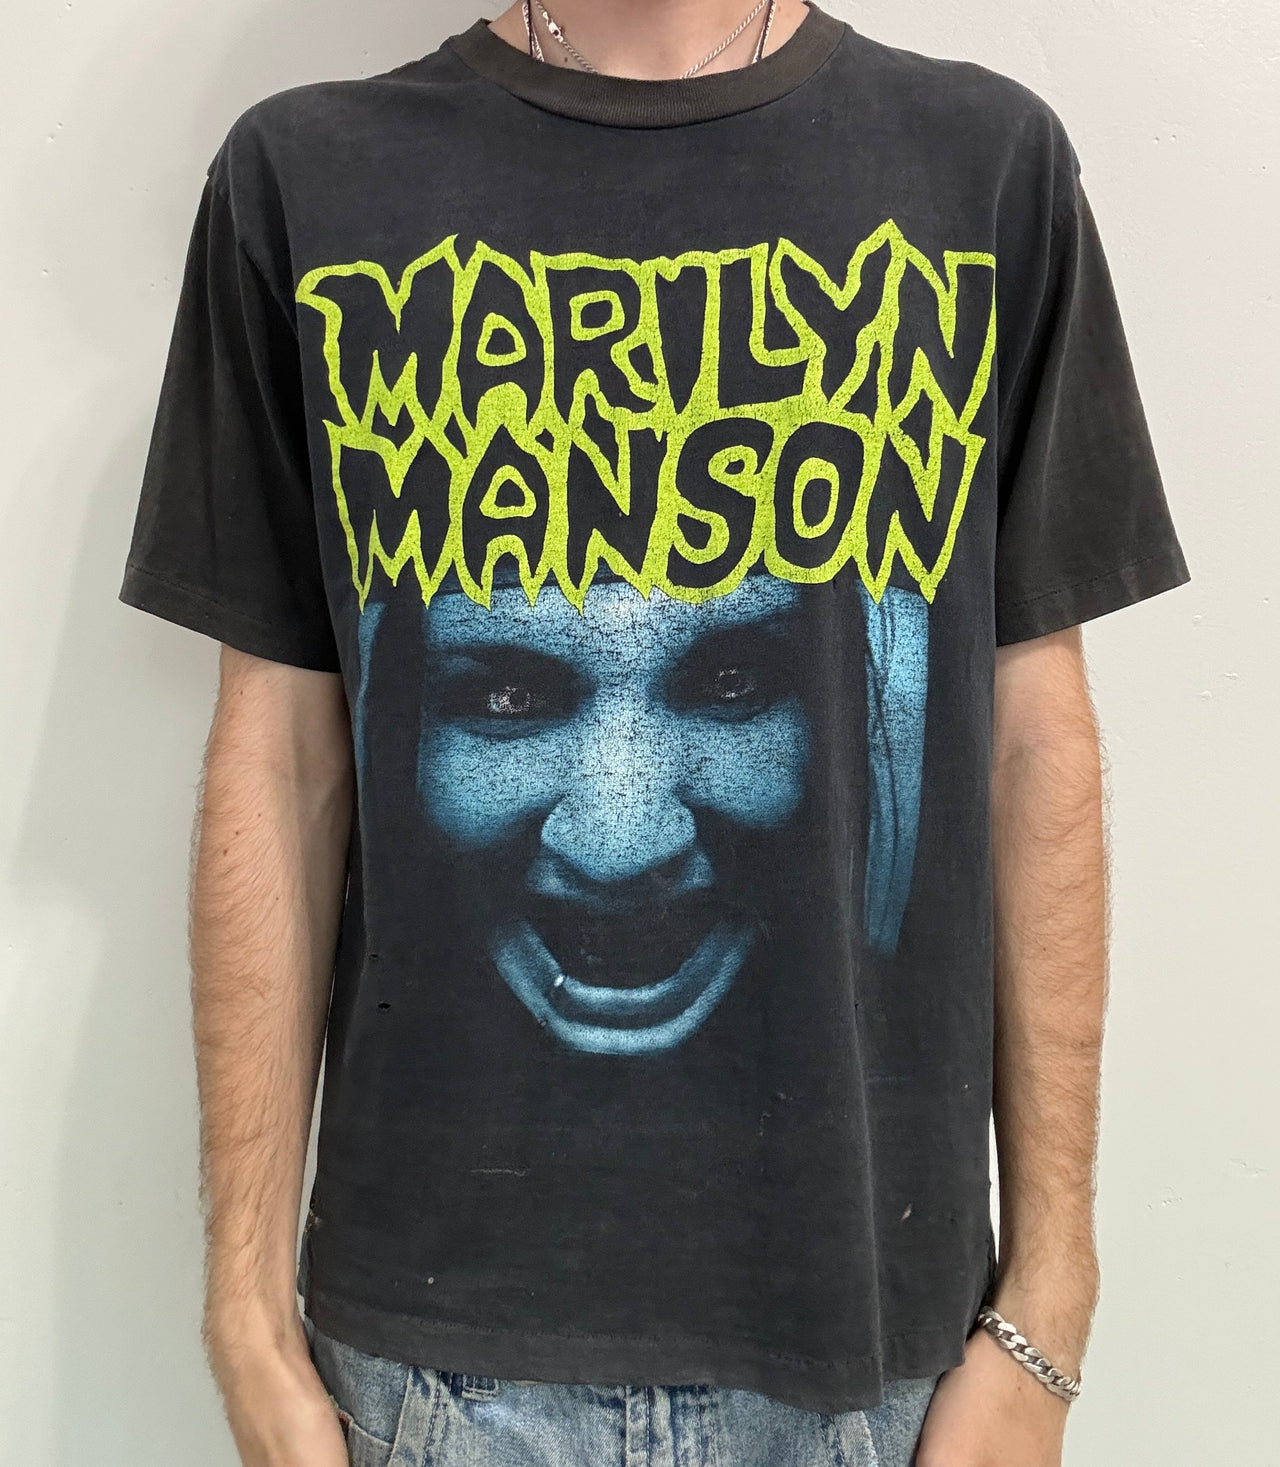 90s Marilyn Manson TV Tee